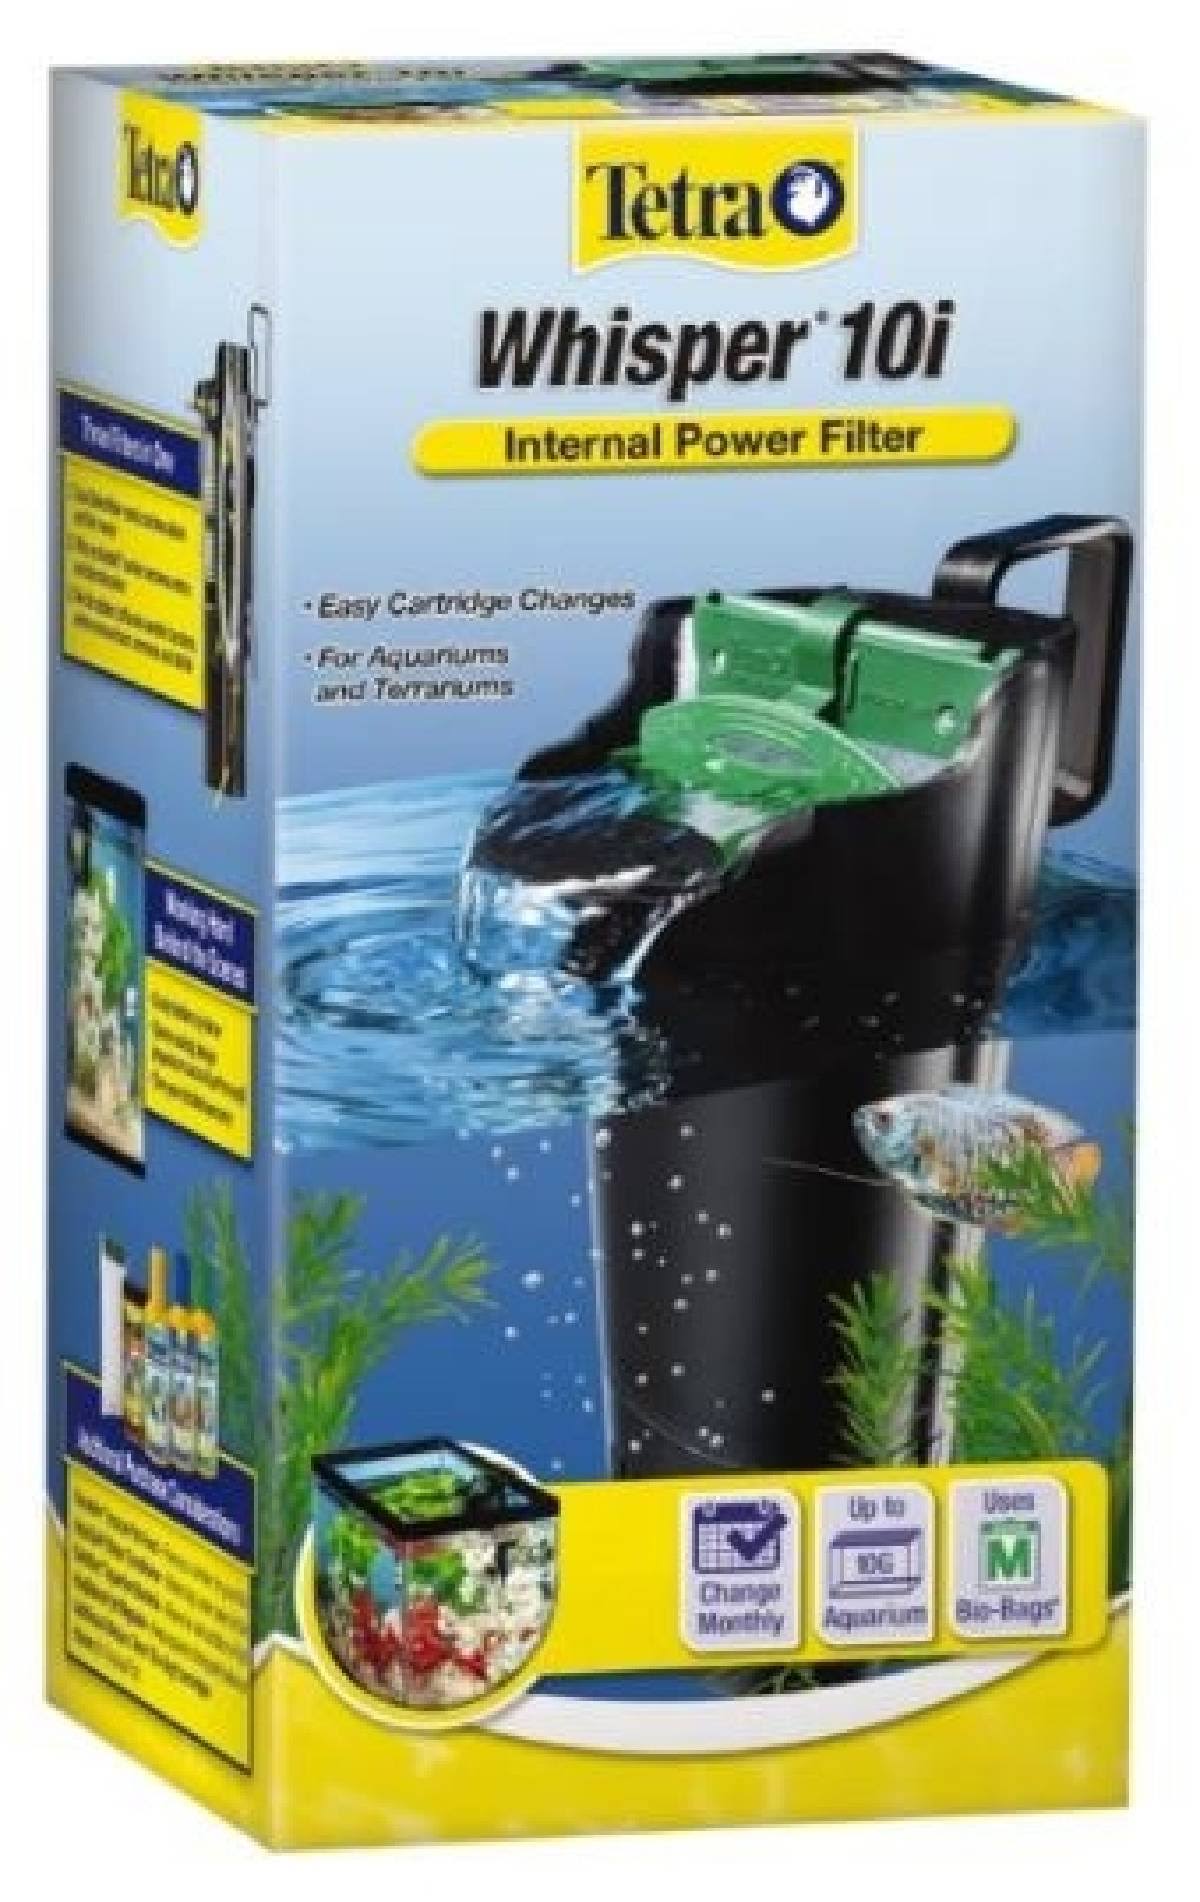 Tetra Whisper Internal Power Filter 10i